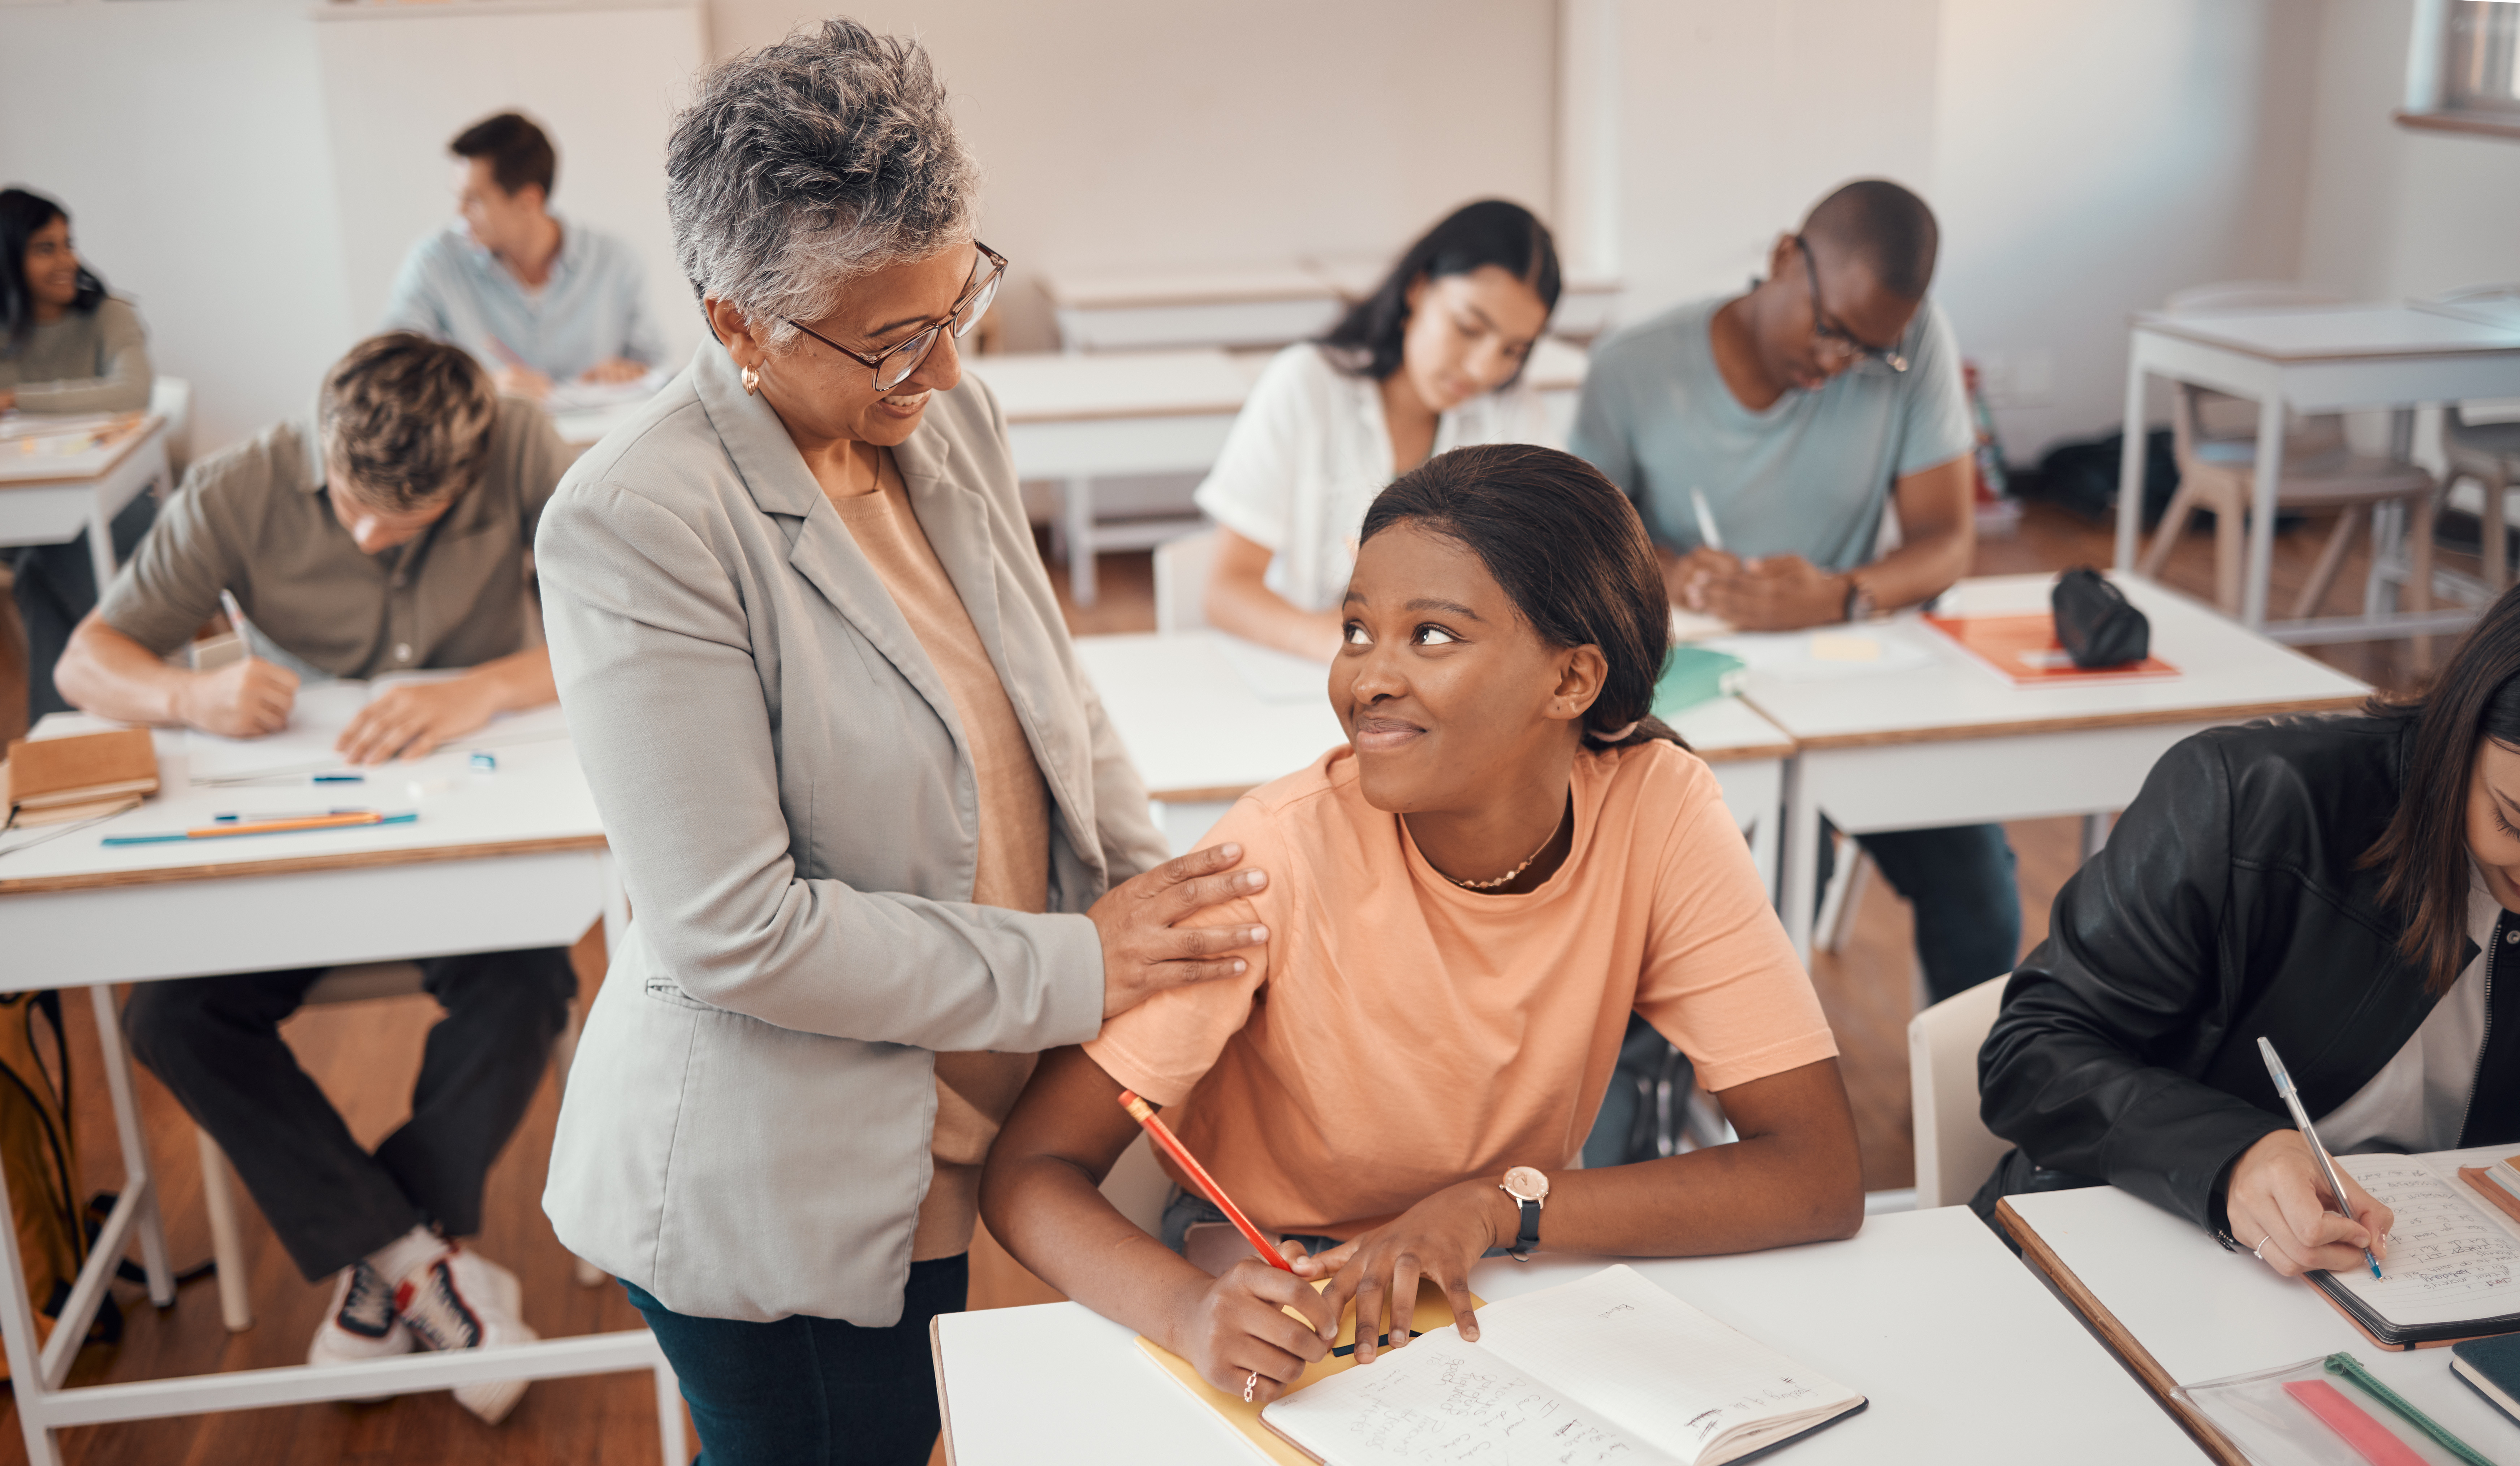 Professora da apoio a aluna colocando a mão no ombro, ambas são mulhere negras 